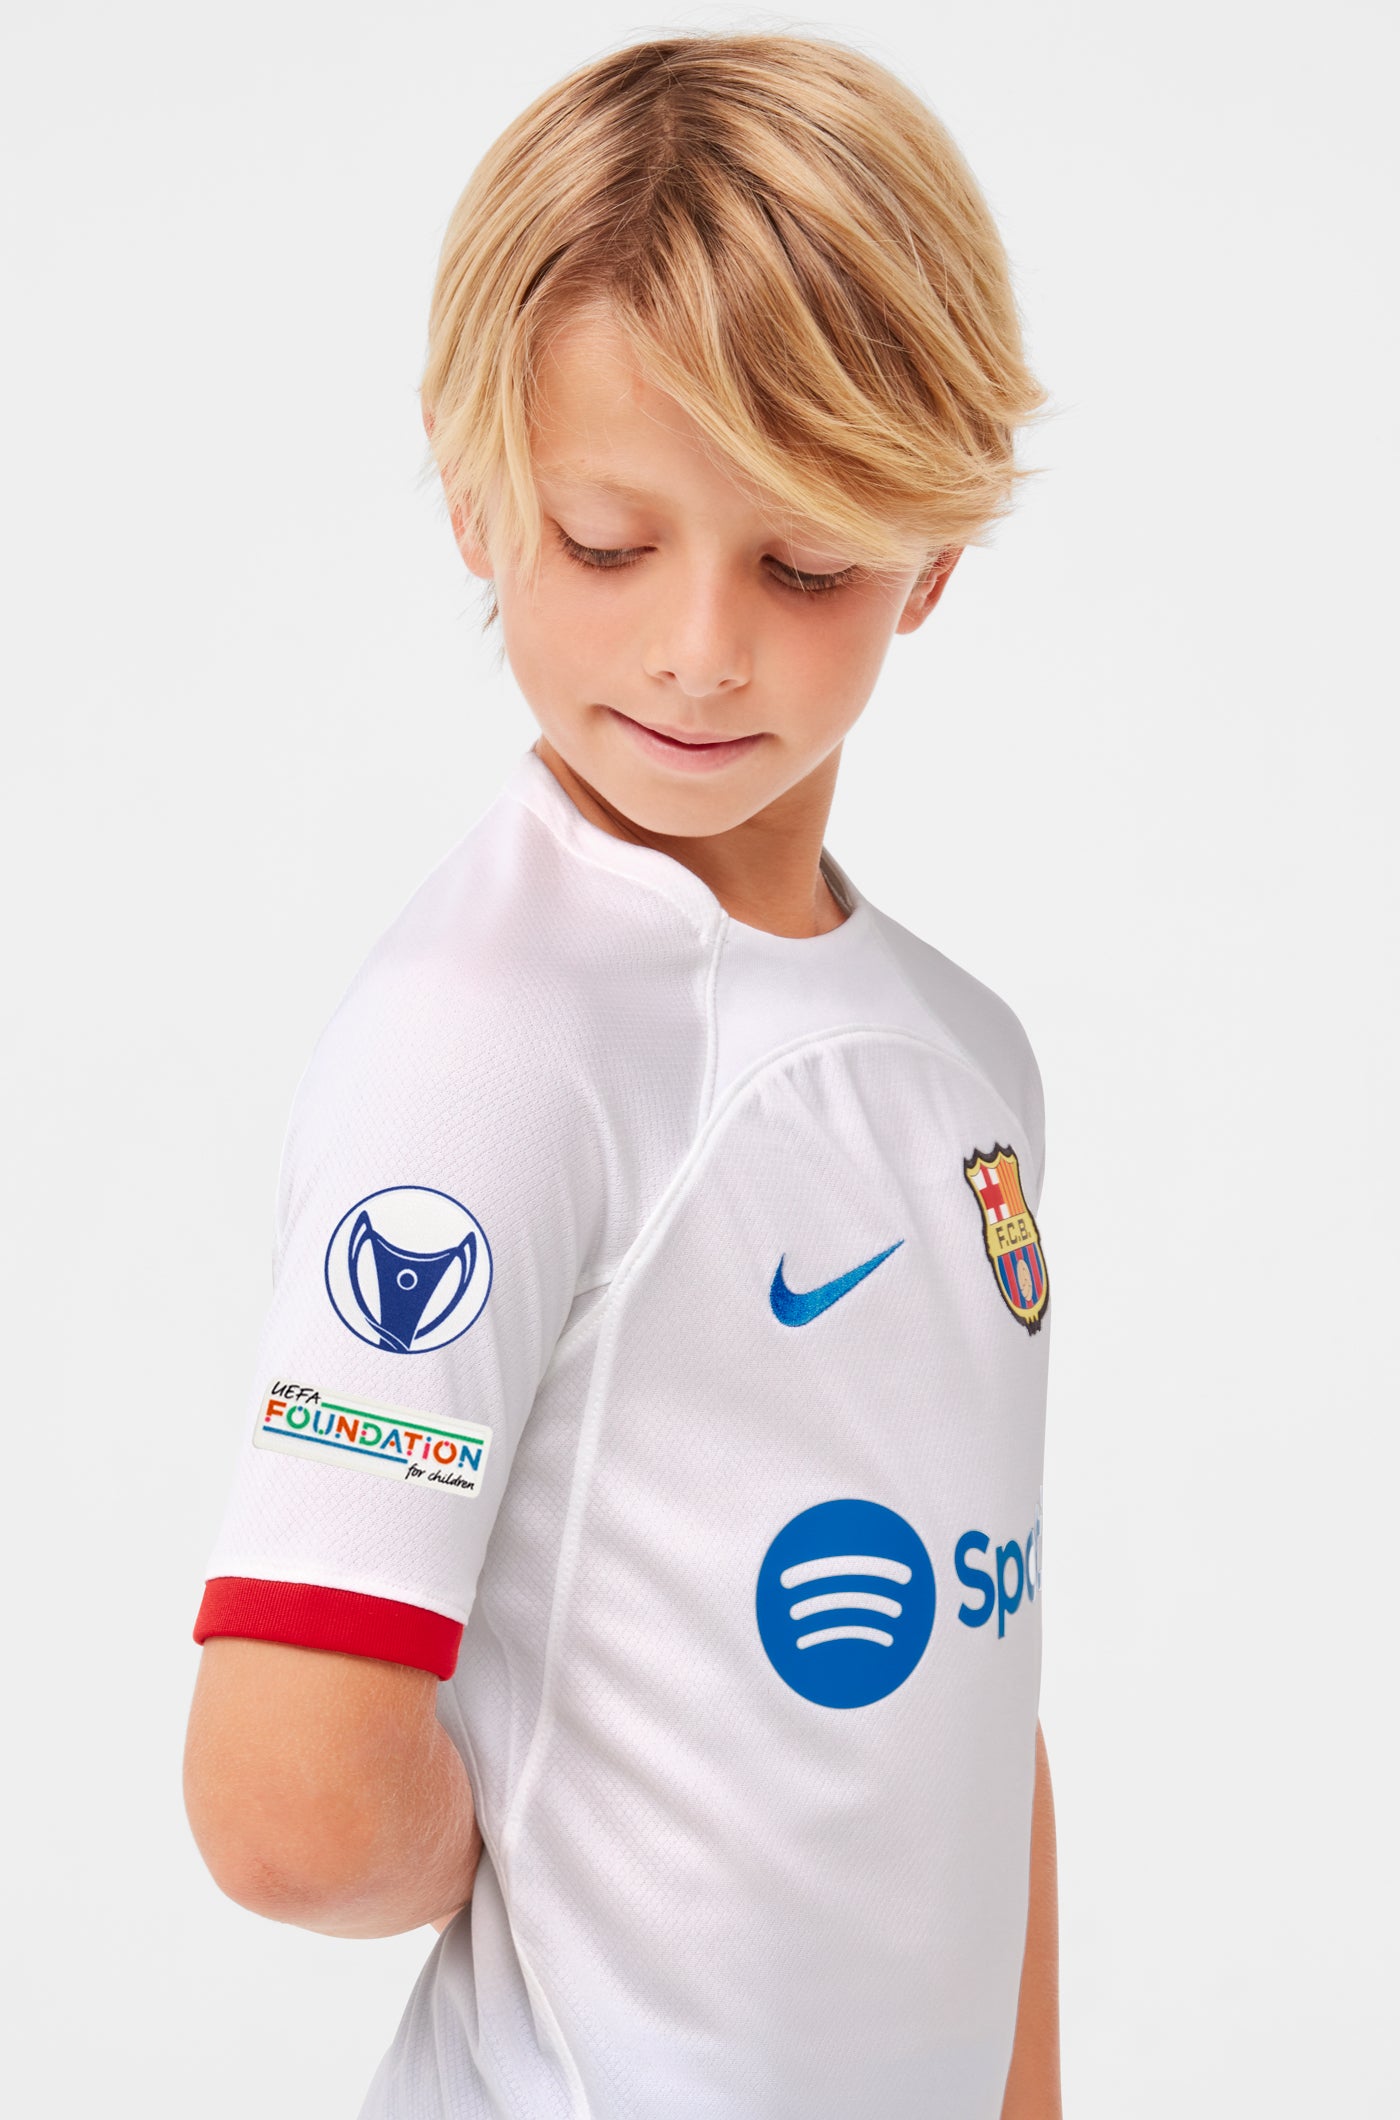 UWCL Camiseta segunda equipación FC Barcelona 23/24 - Junior  - O. BATLLE